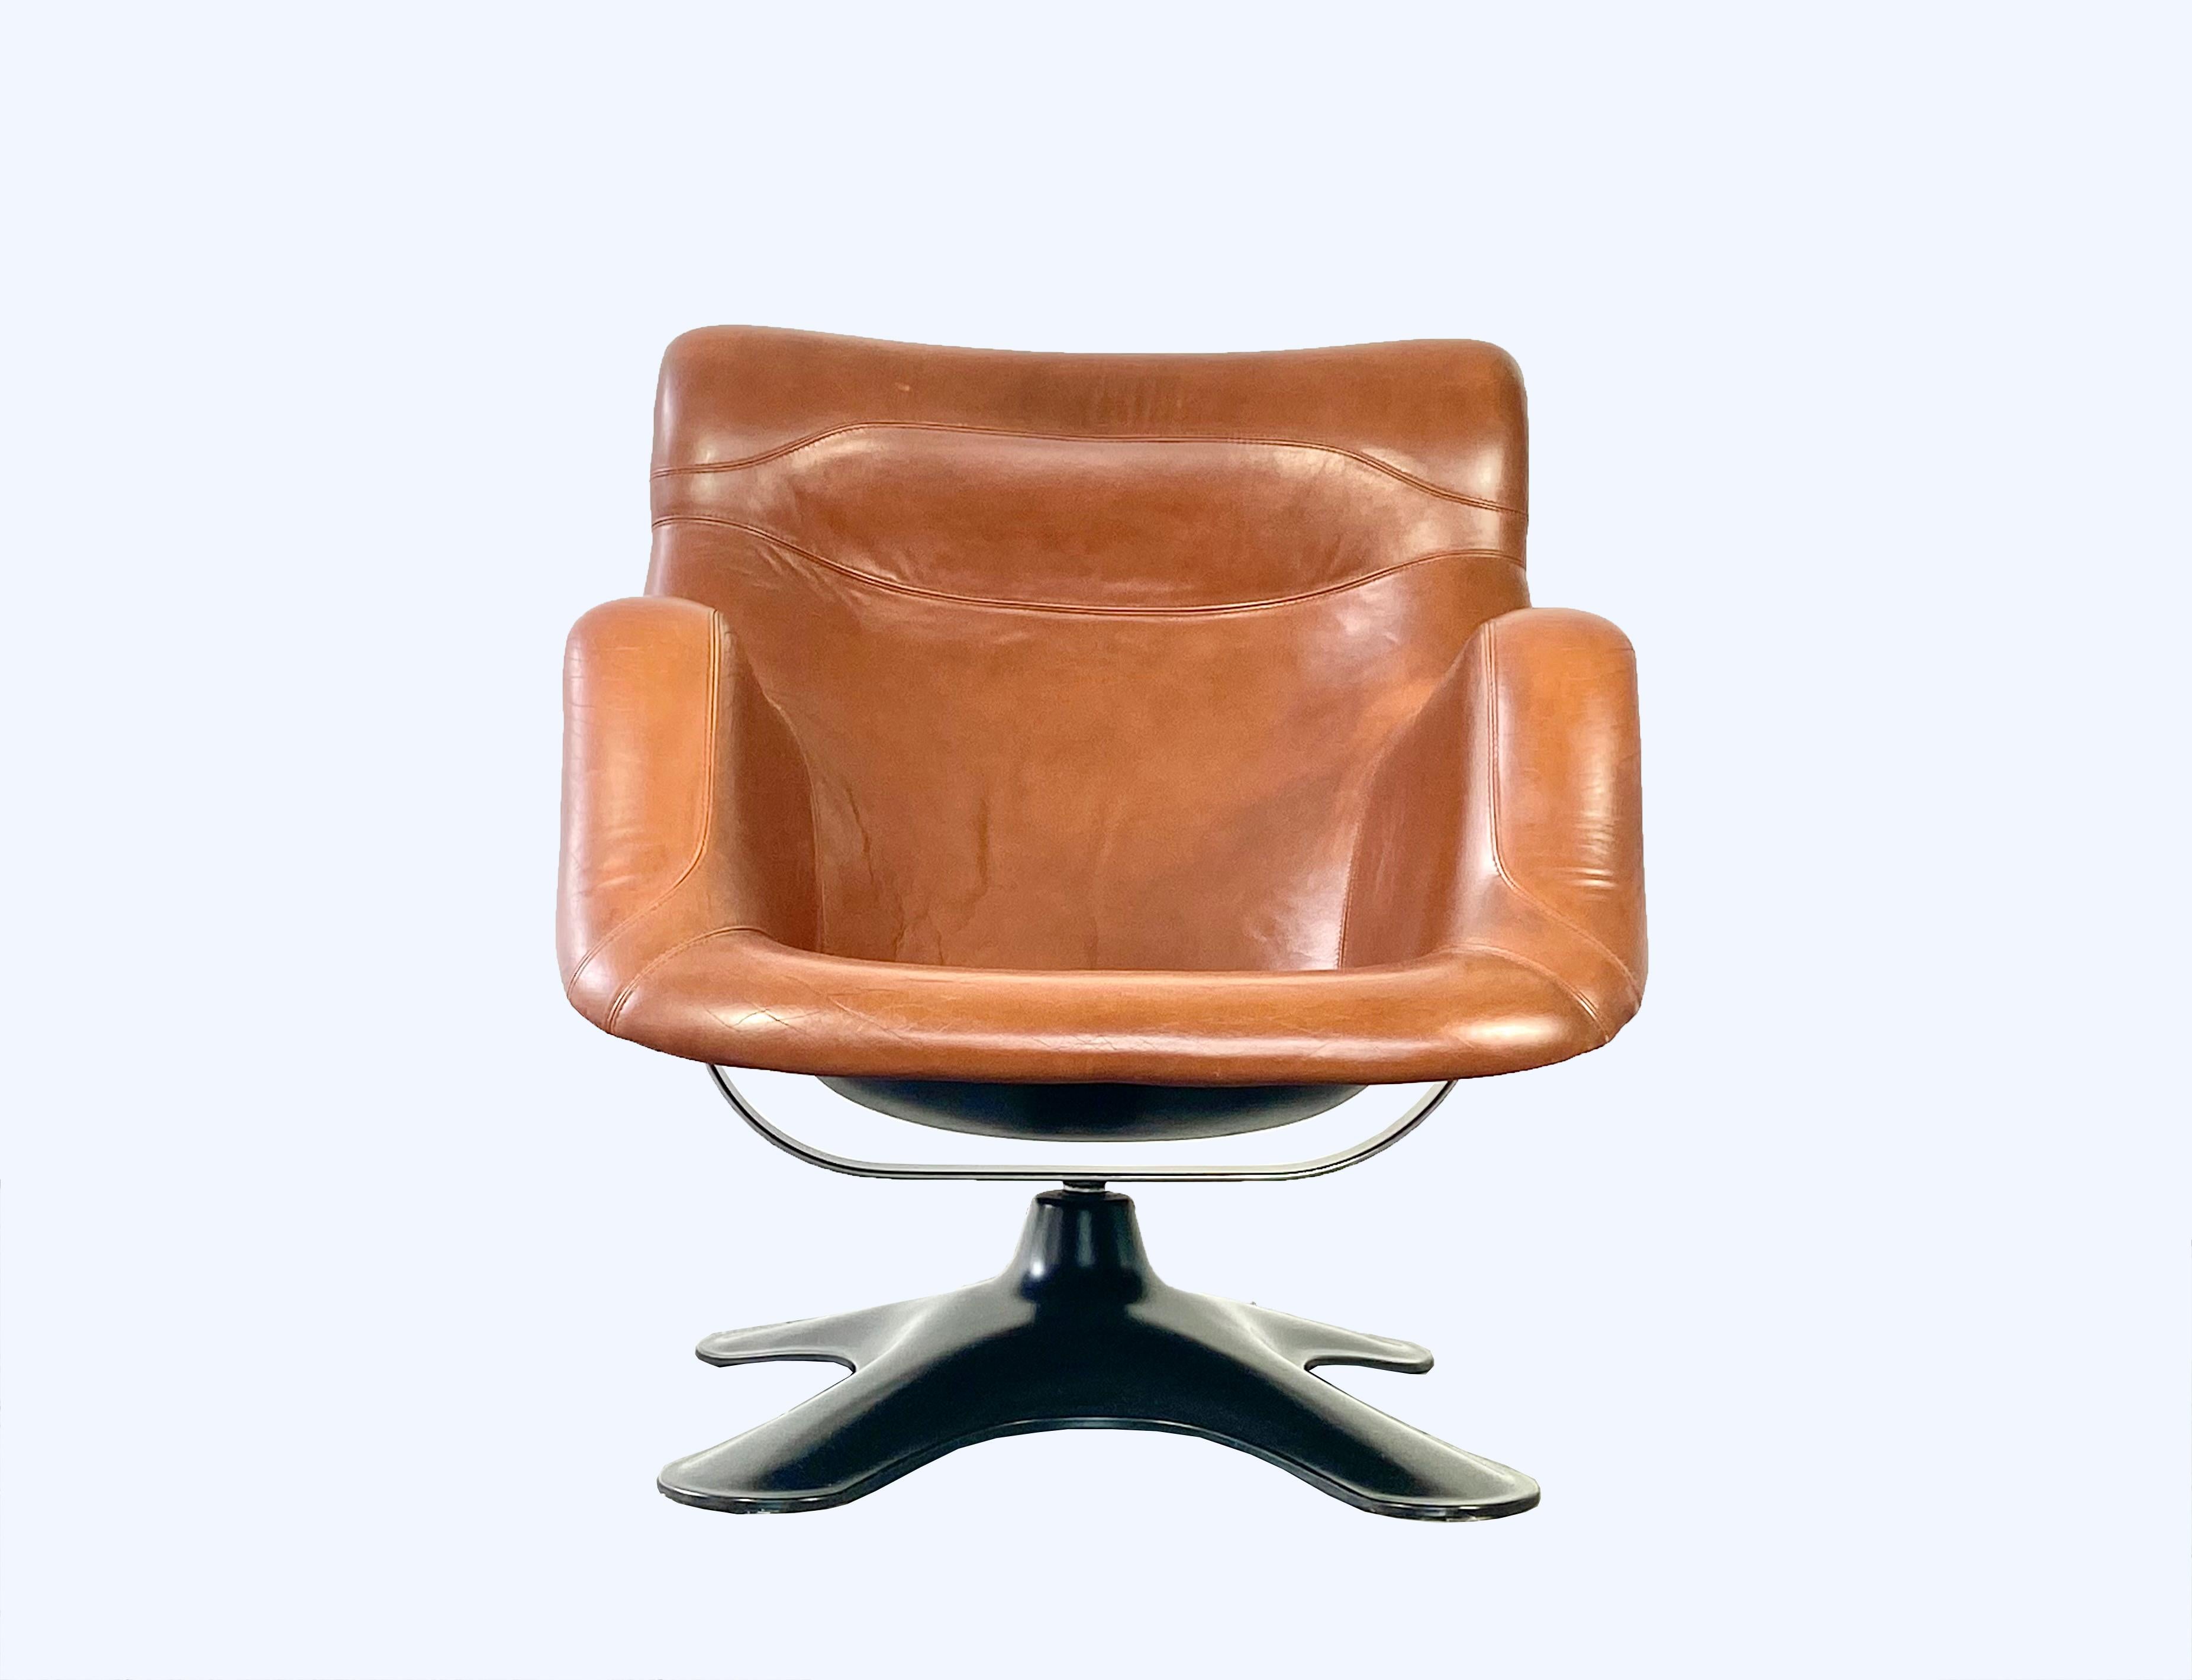 Sehr bequemer und futuristischer Sessel Karuselli Lounge, entworfen von Yrjö Kukkapuro im Jahr 1965.

Schwarze geformte Glasfasersitzschale, mit originaler cognacbrauner Lederpolsterung, Farbton 244. Ausgestattet mit einer